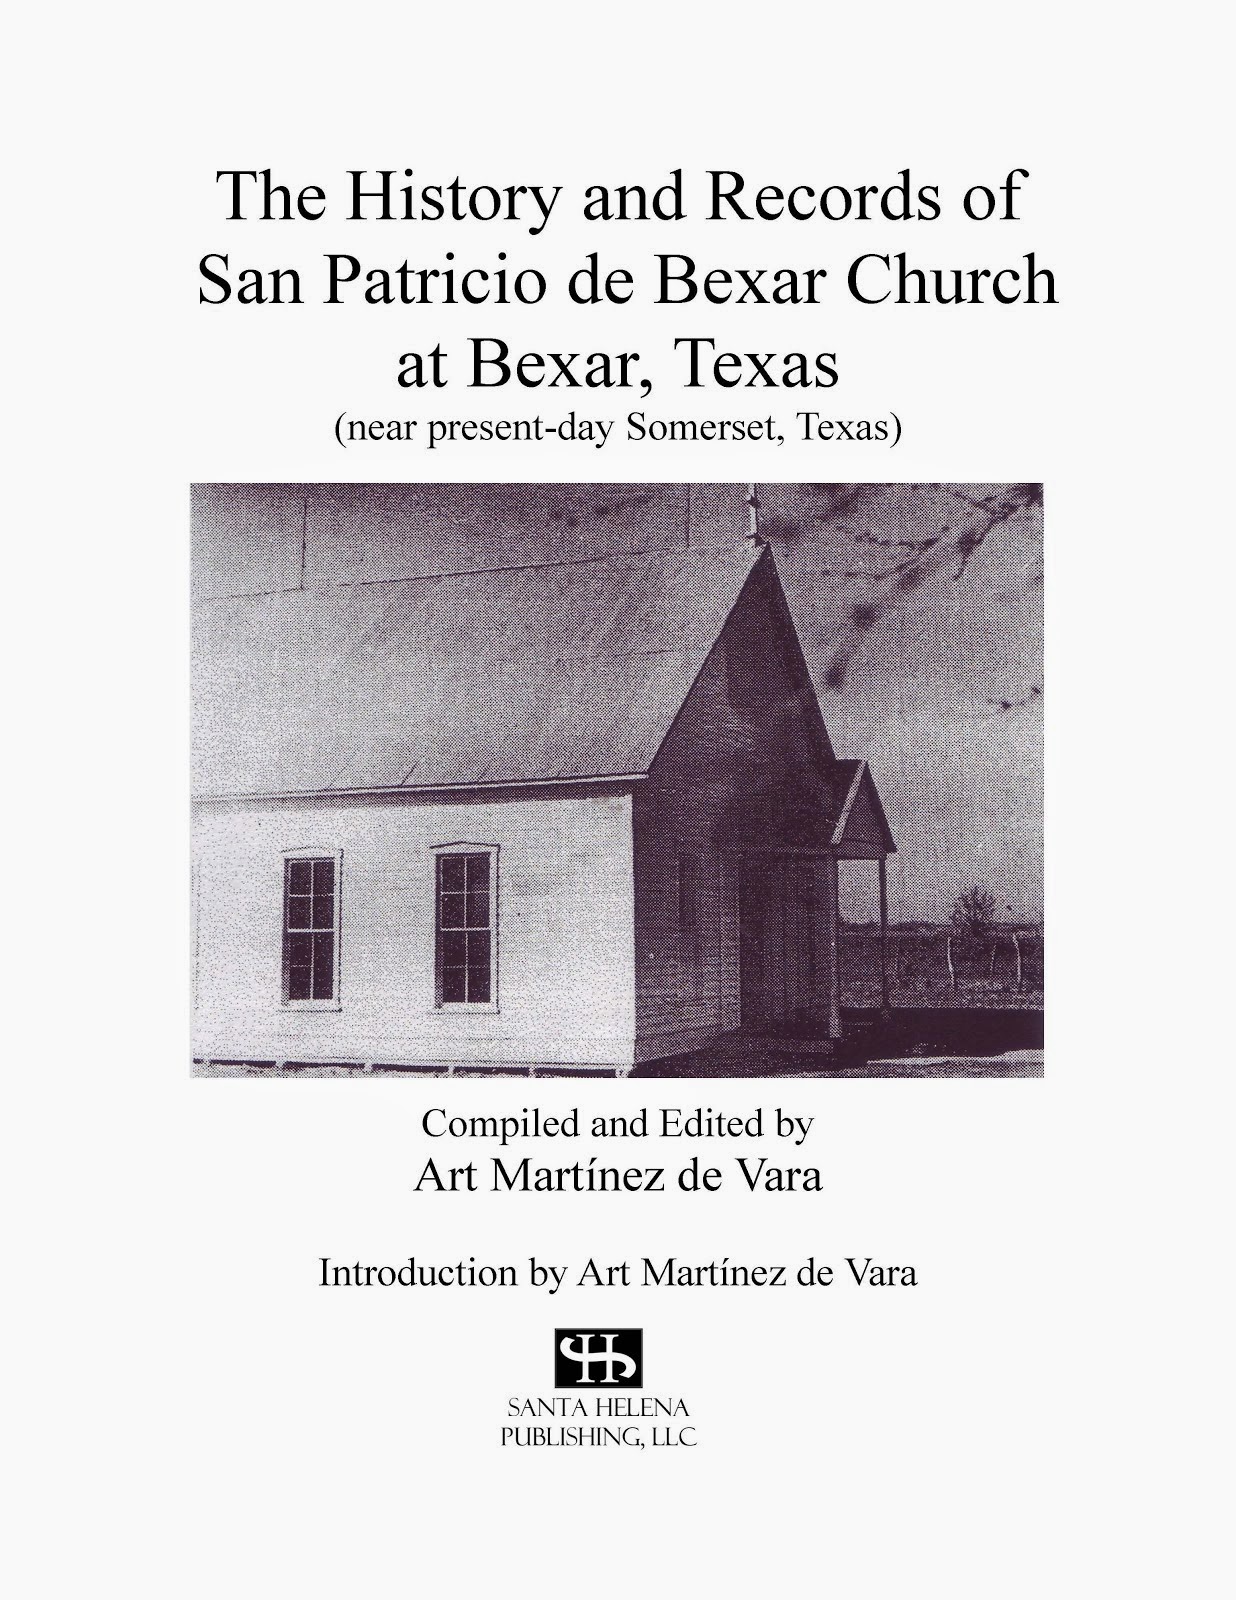 History and Records of San Patricio de Bexar Church at Bexar, Texas